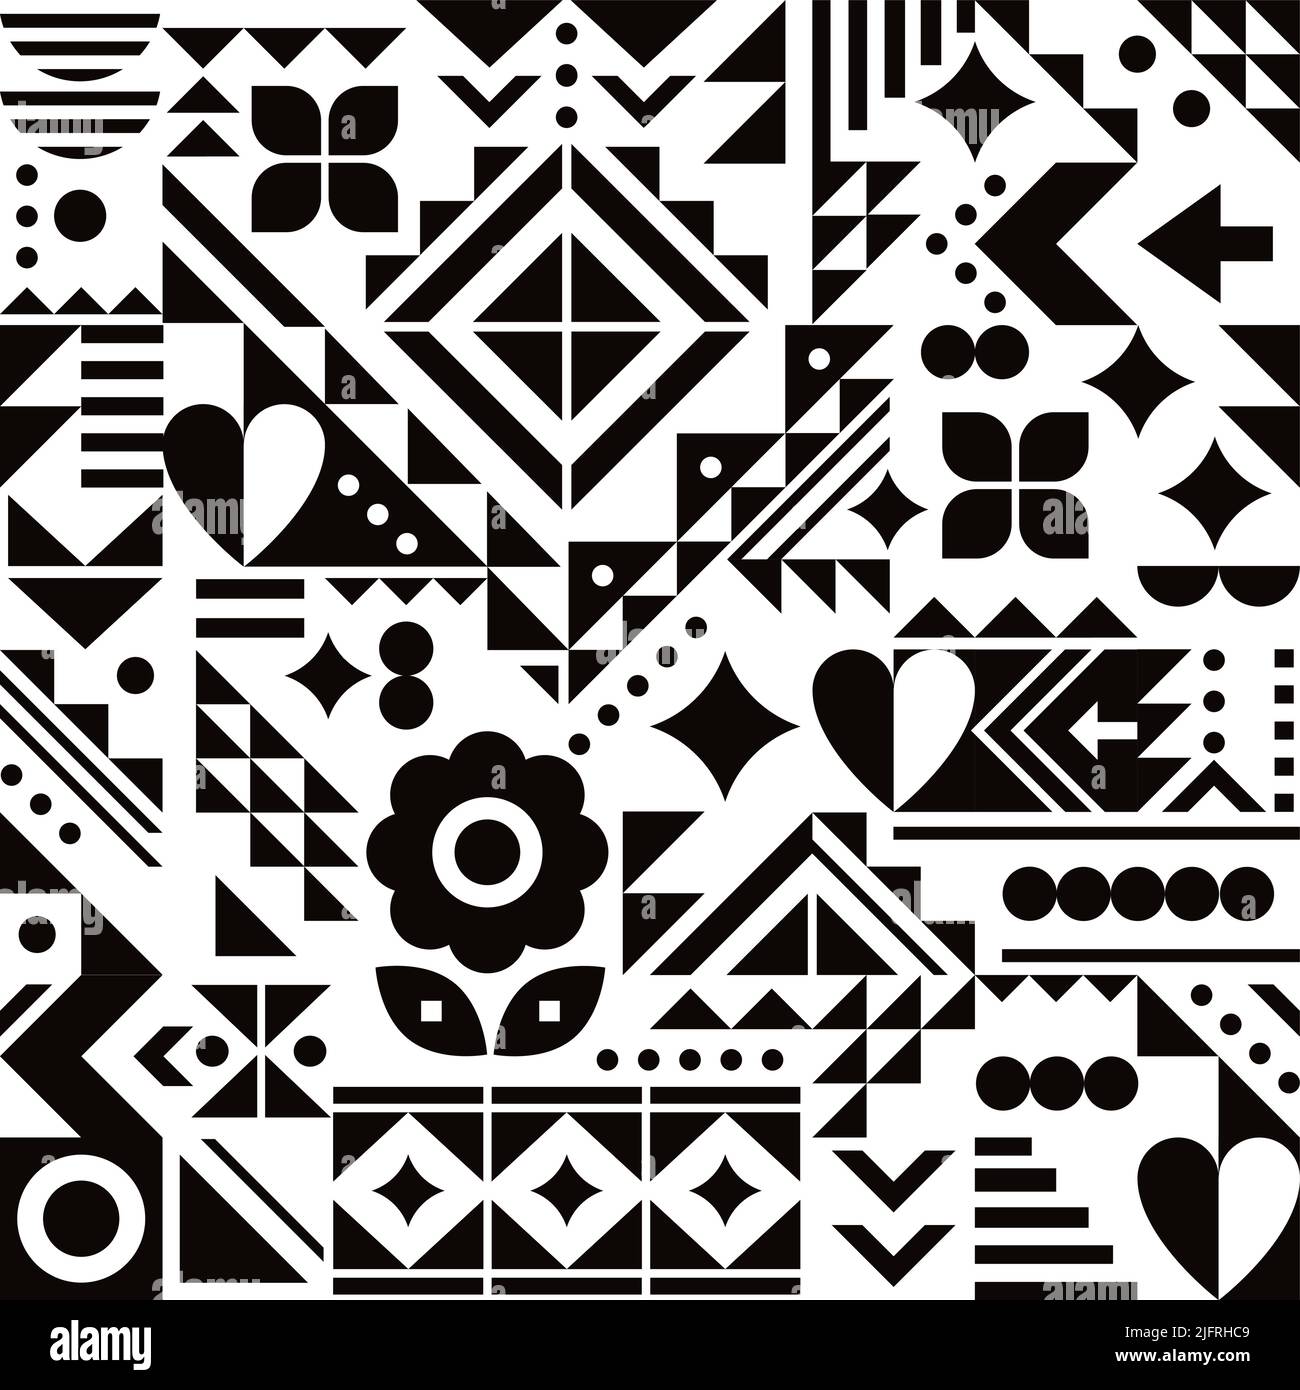 Modello vettoriale di ispirazione Bauhaus senza cuciture con cuori, fiori e forme geometriche in bianco e nero, design astratto moderno Illustrazione Vettoriale